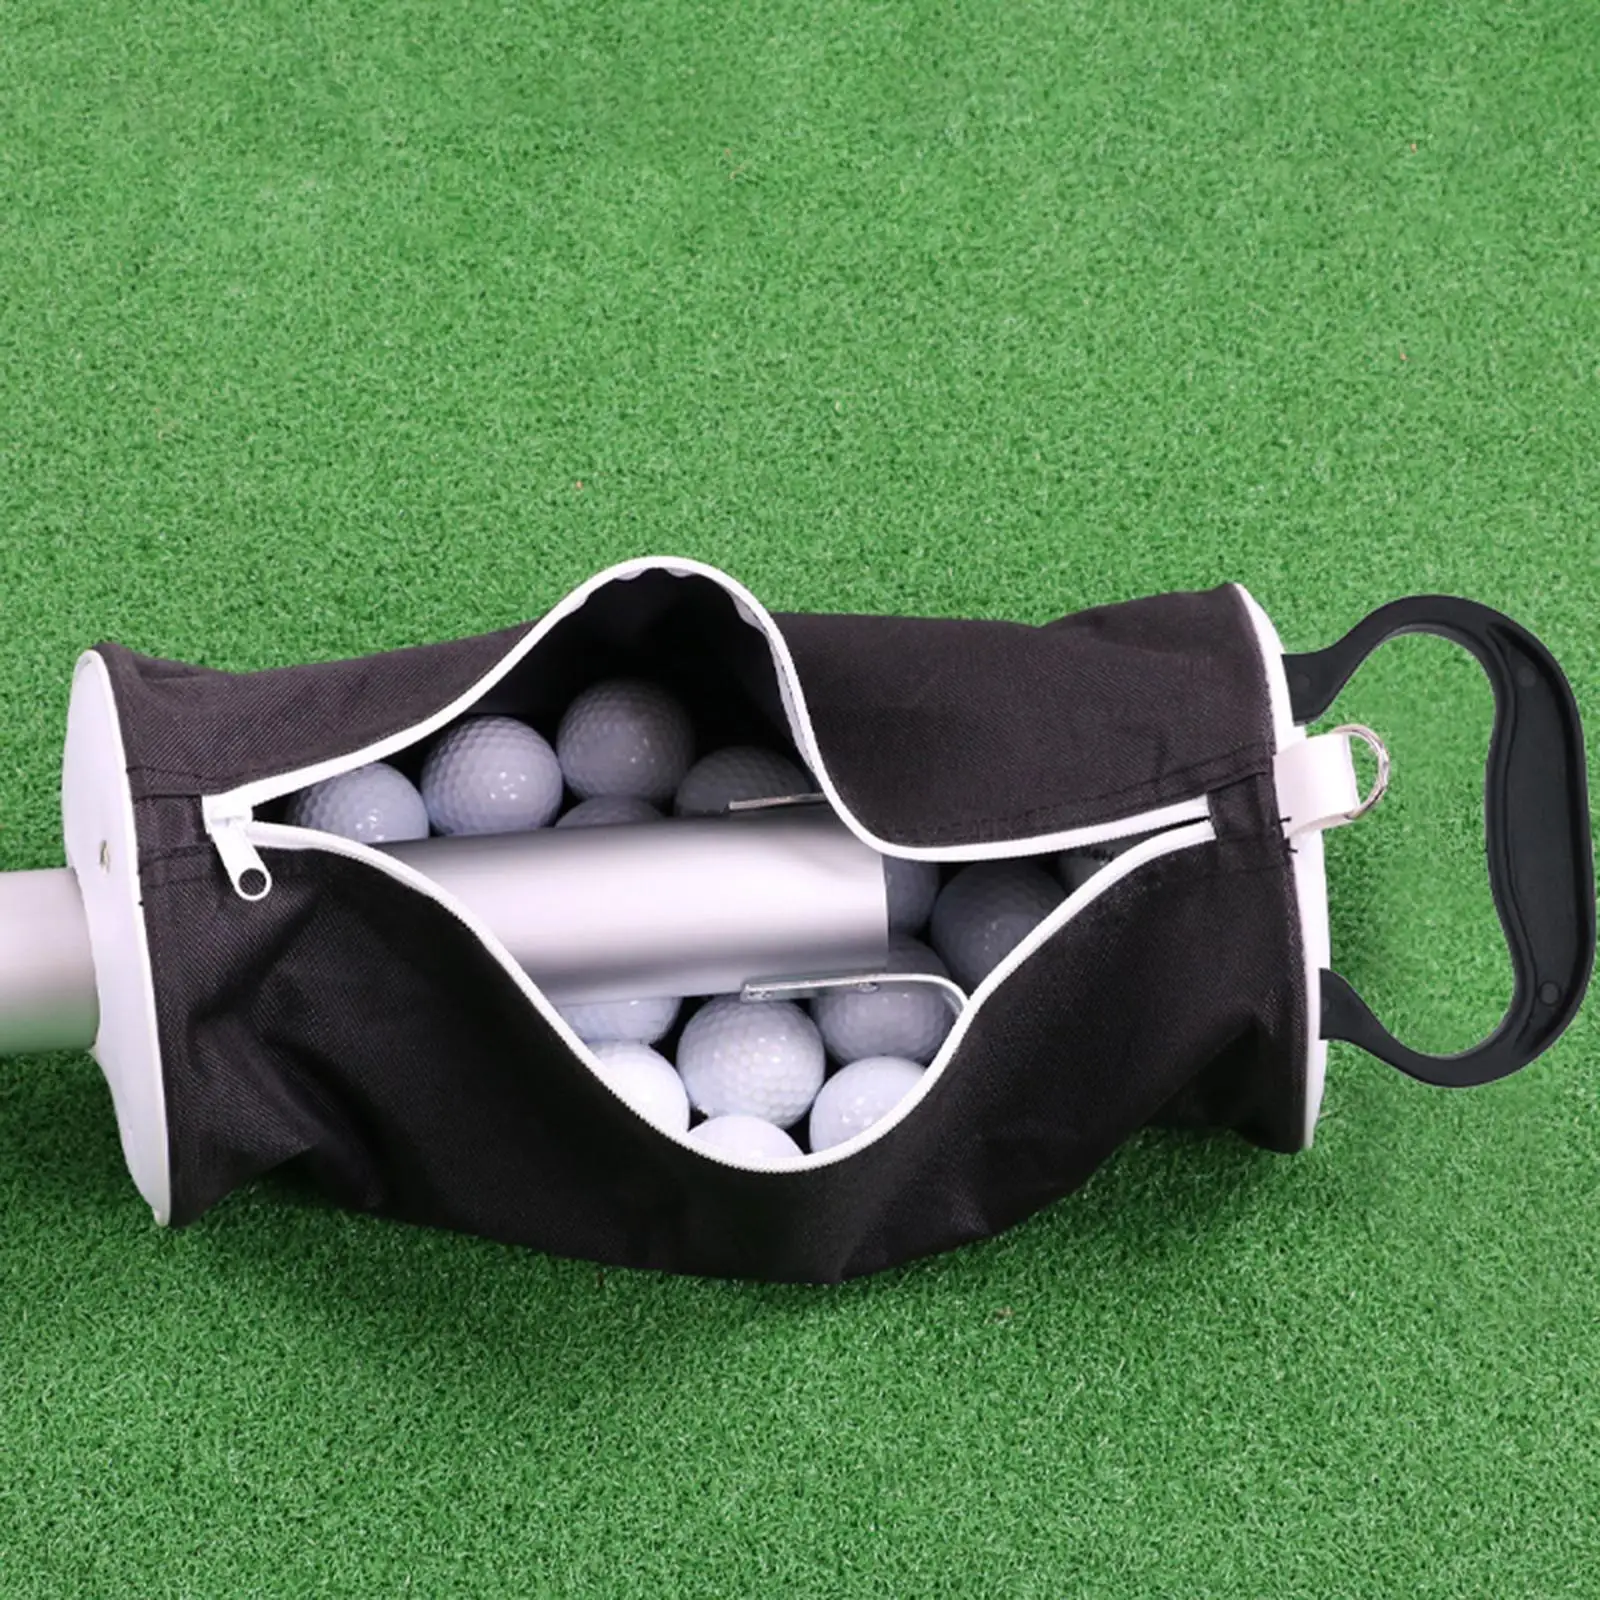 Golf Ball Retriever Balls Grabber Tool Aluminum Golf Ball Pick up Shag Bag